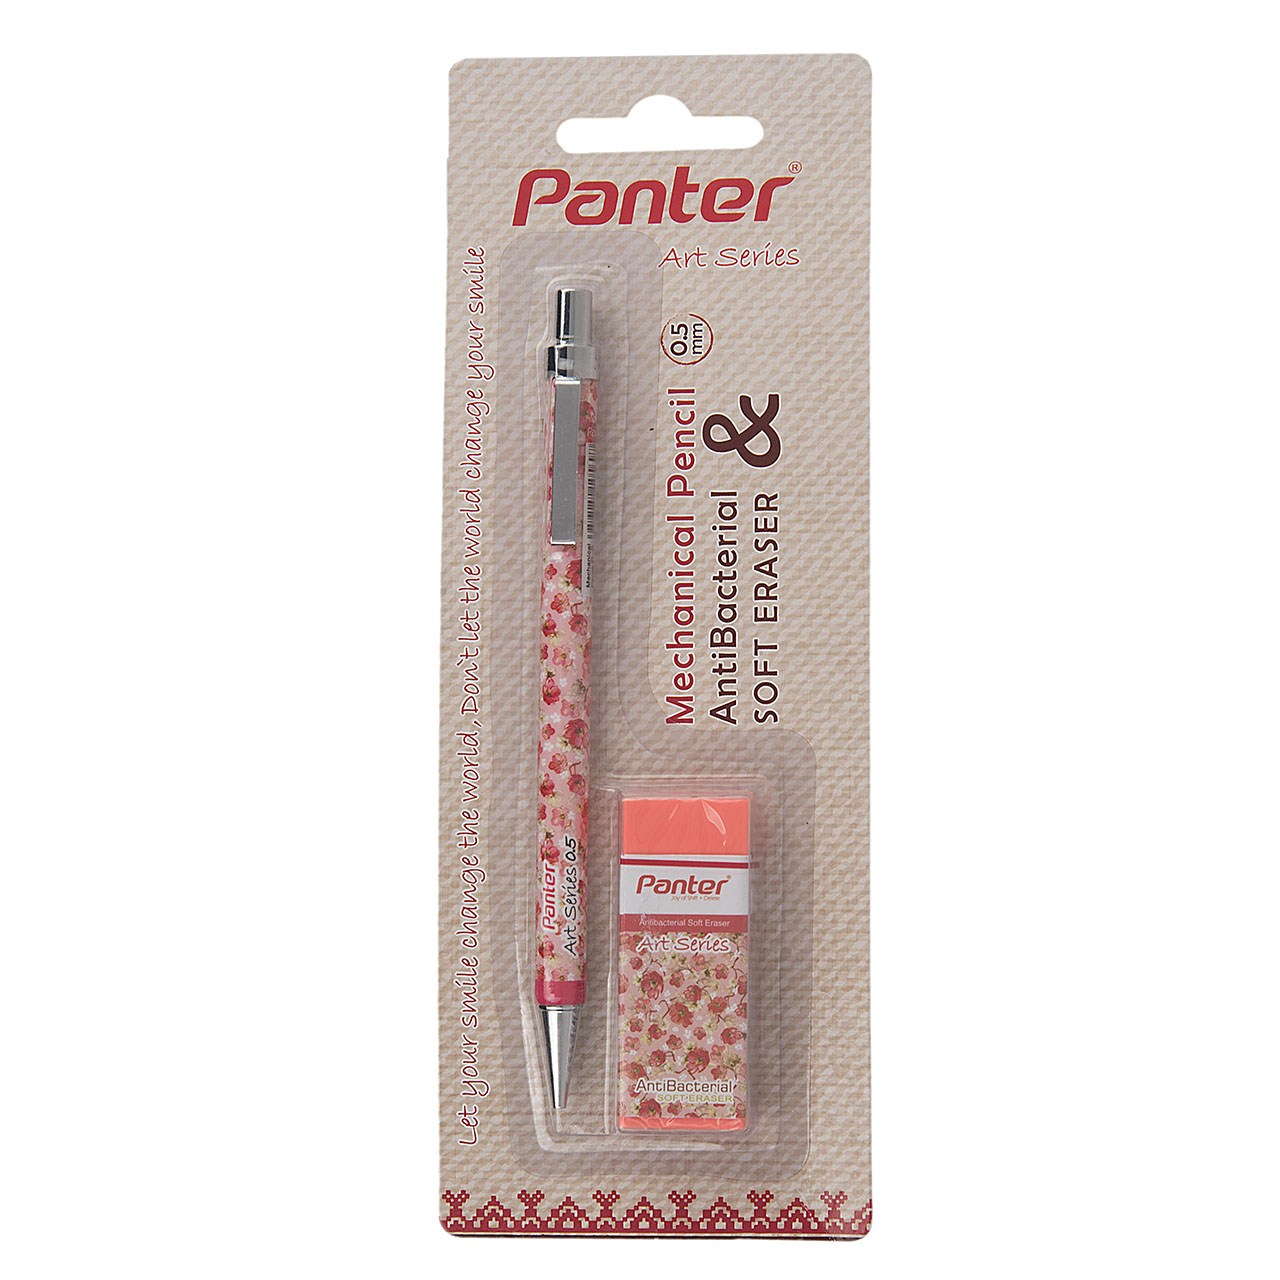 مداد نوکی 0.5 میلی متری پنتر سری Art طرح 2 به همراه پاک کن